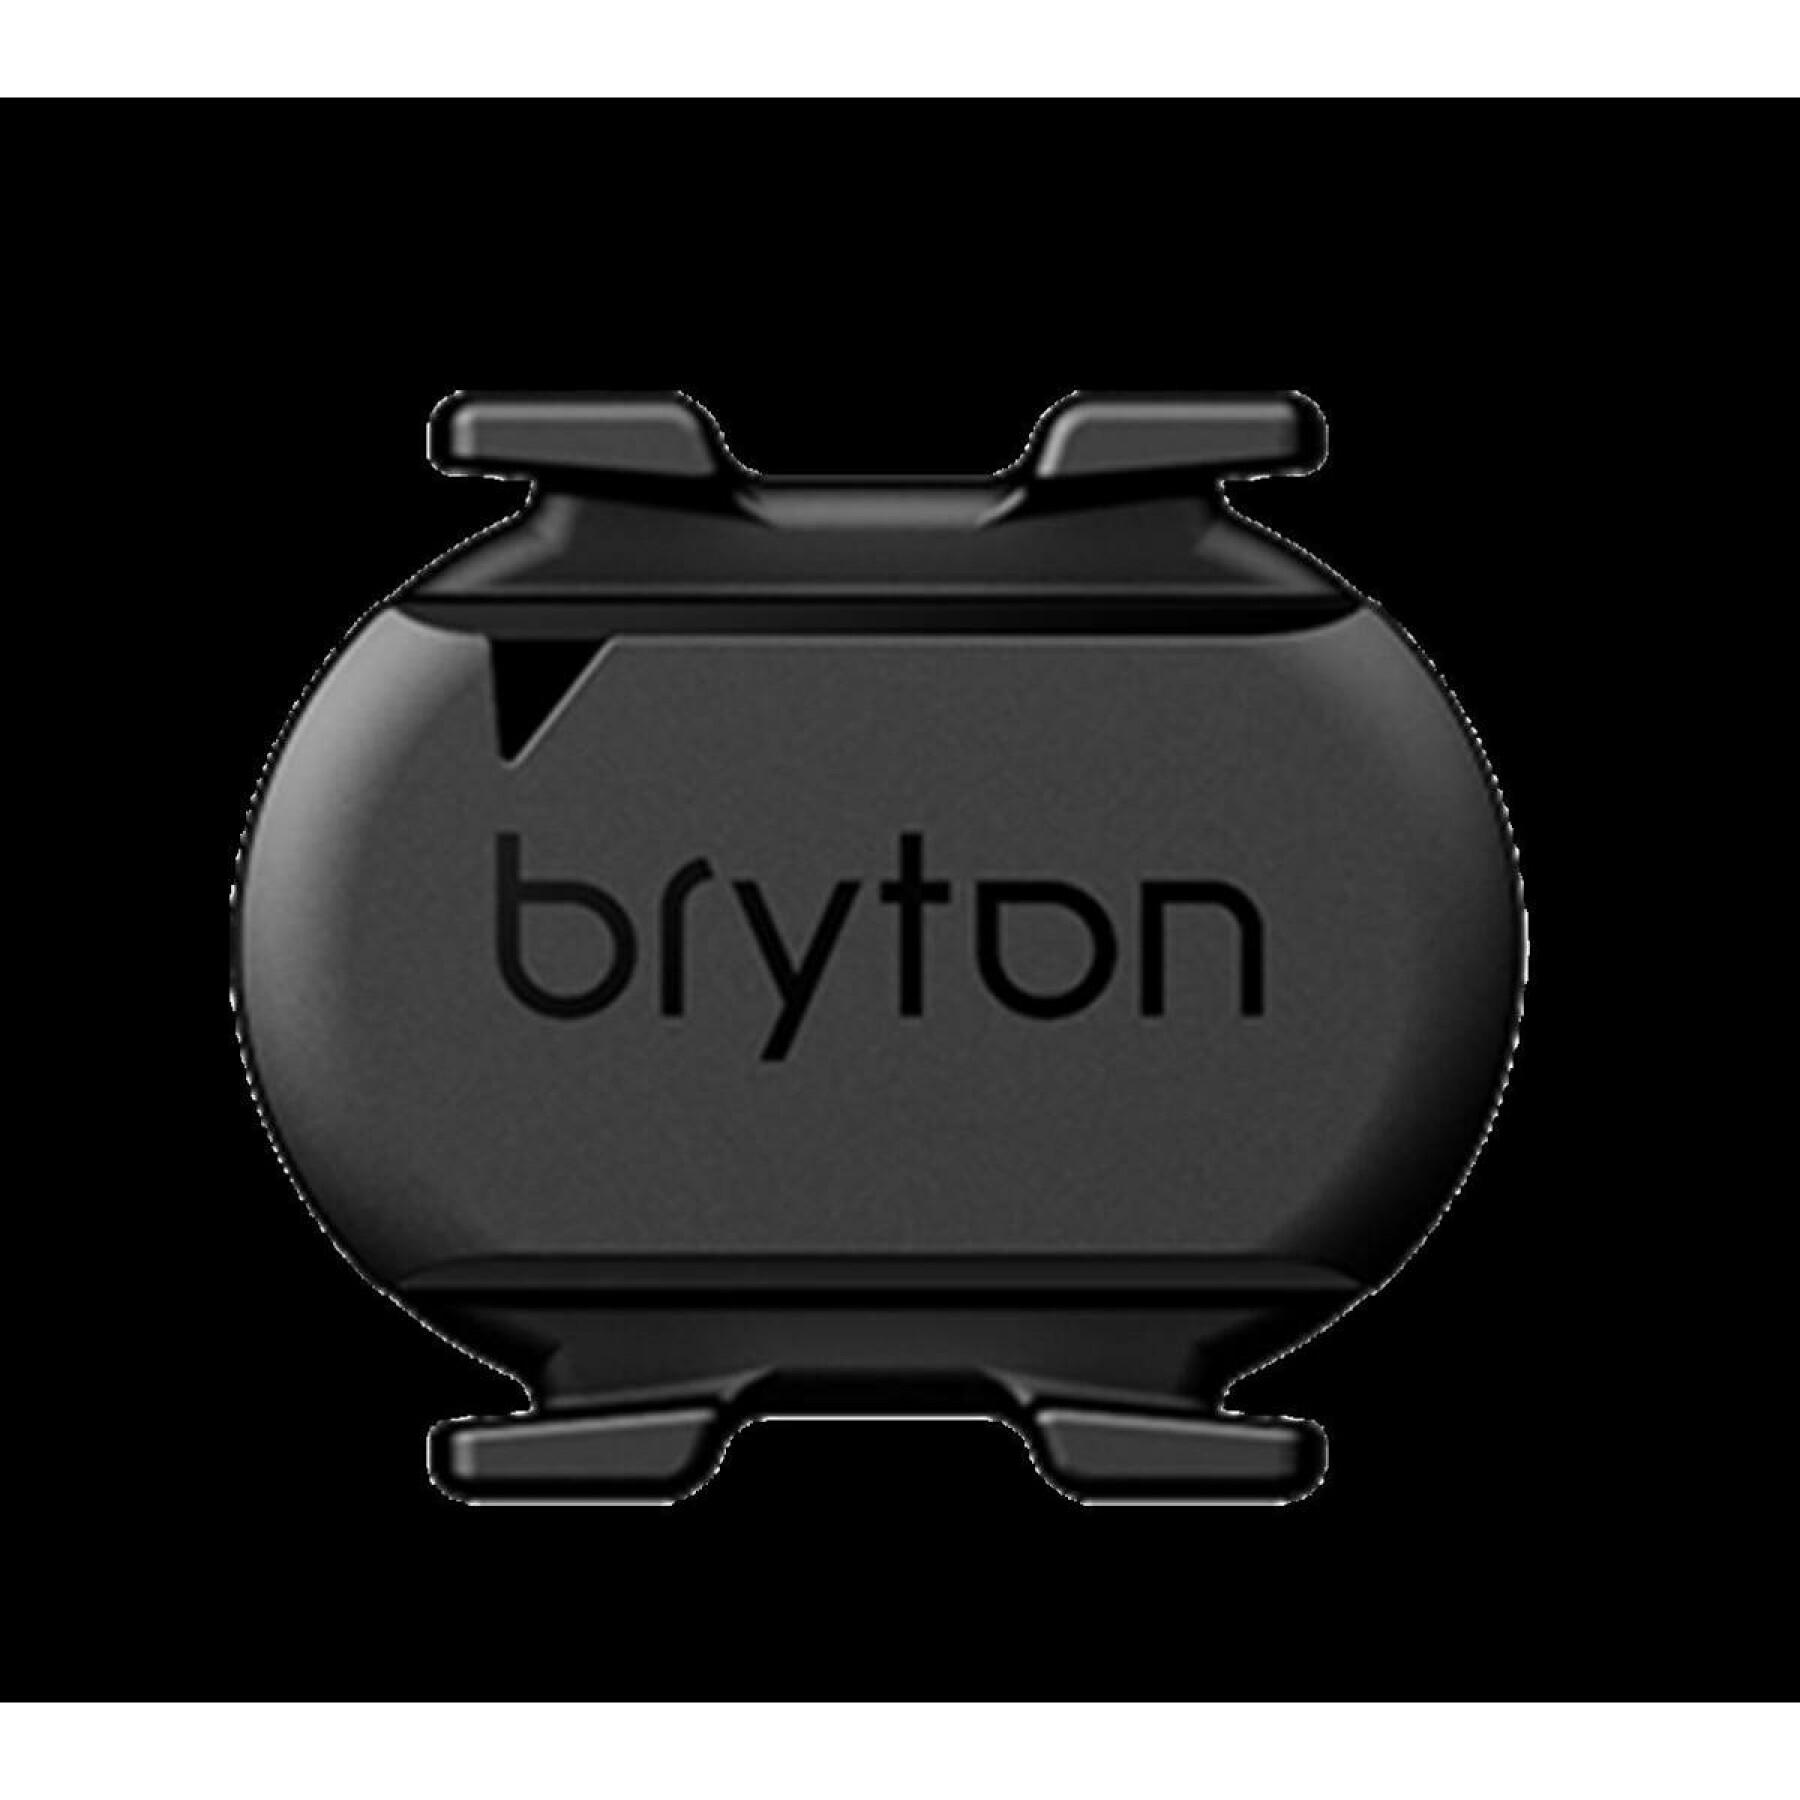 Trittfrequenzsensor / in der Tasche Bryton bt & ant+